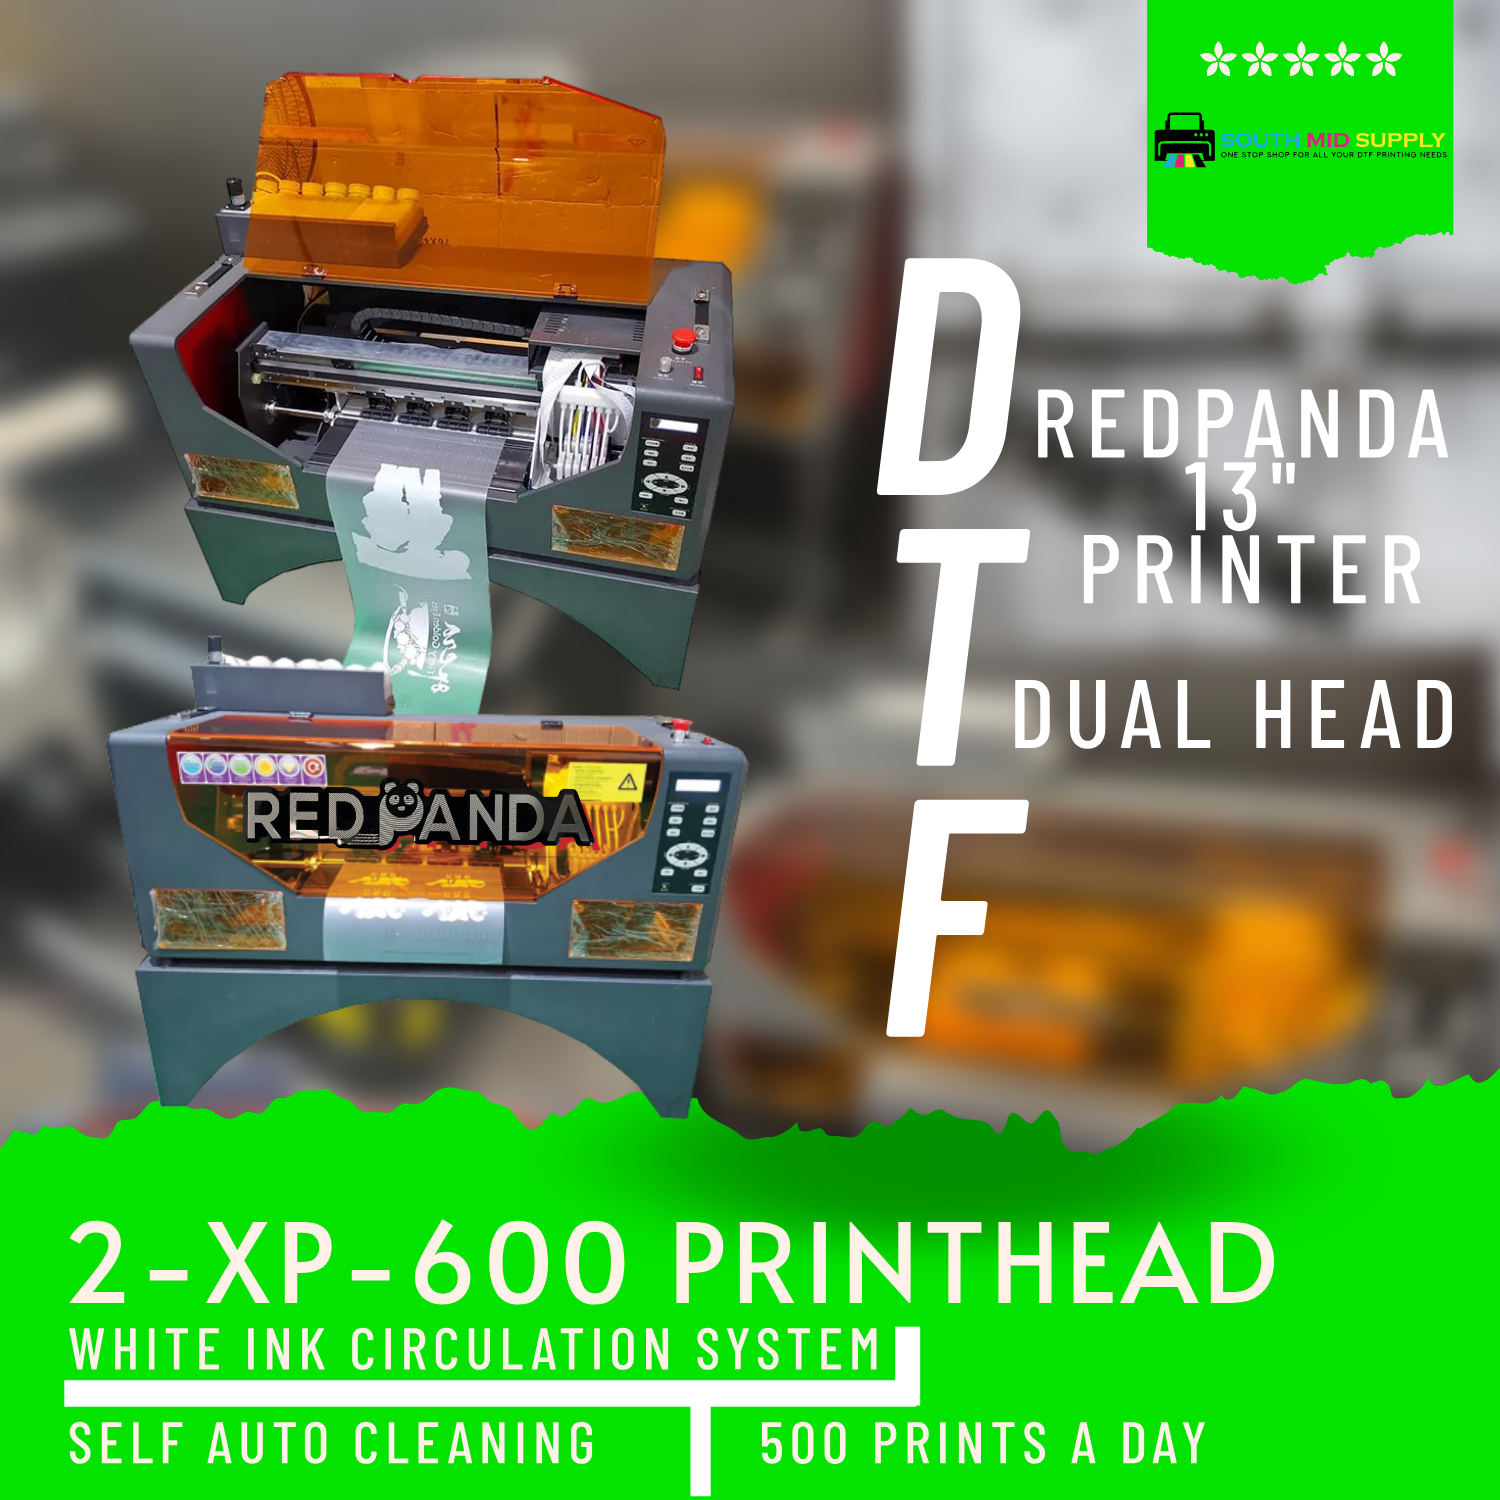 24in Direct Transfer Printer DTF Printer Direct to Film Printer